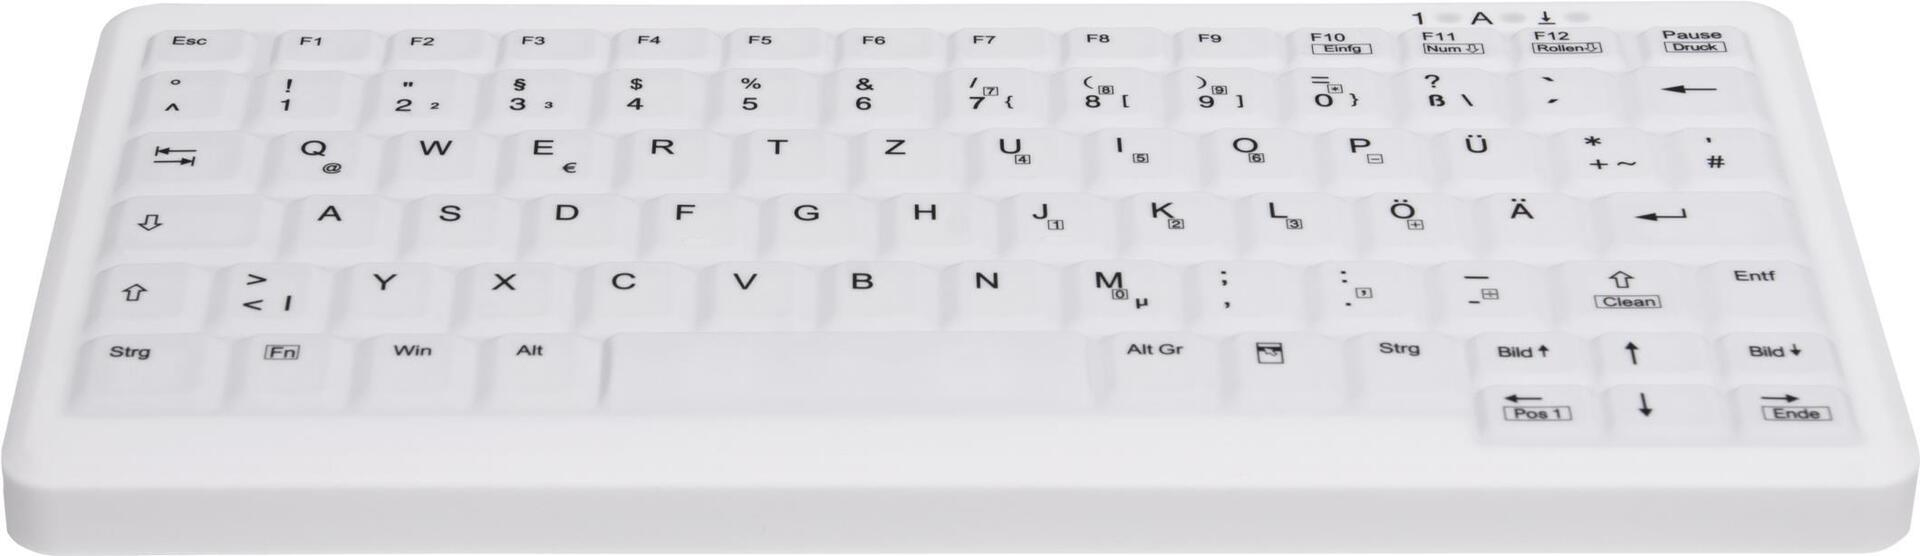 CHERRY AK-C4110 Tastatur USB QWERTZ Deutsch Weiß (AK-C4110F-US-W/GE)